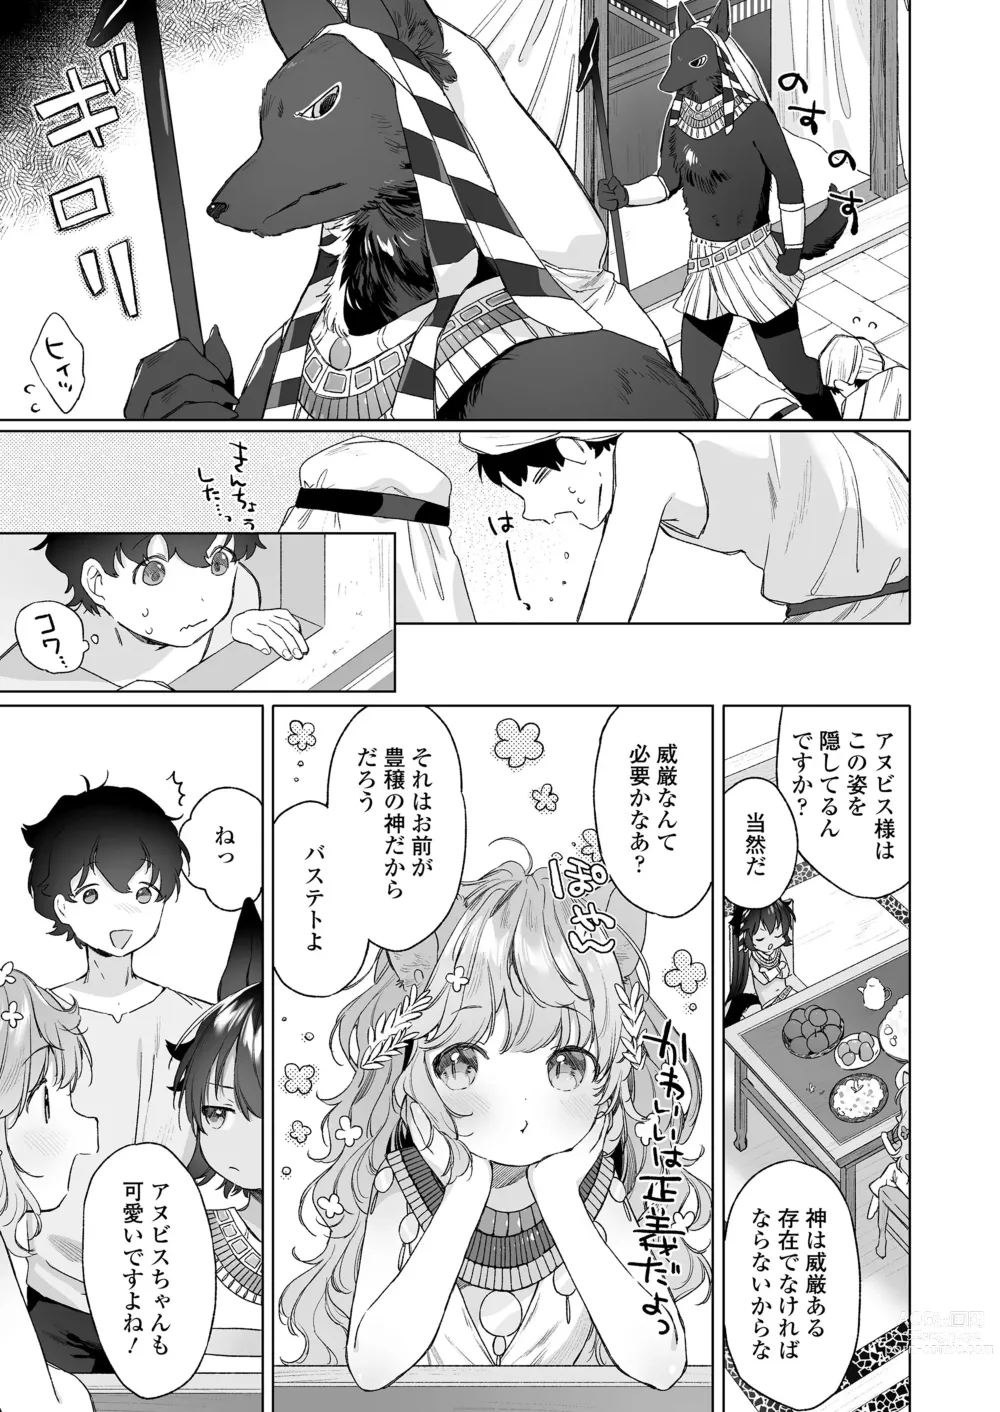 Page 7 of manga Towako 15